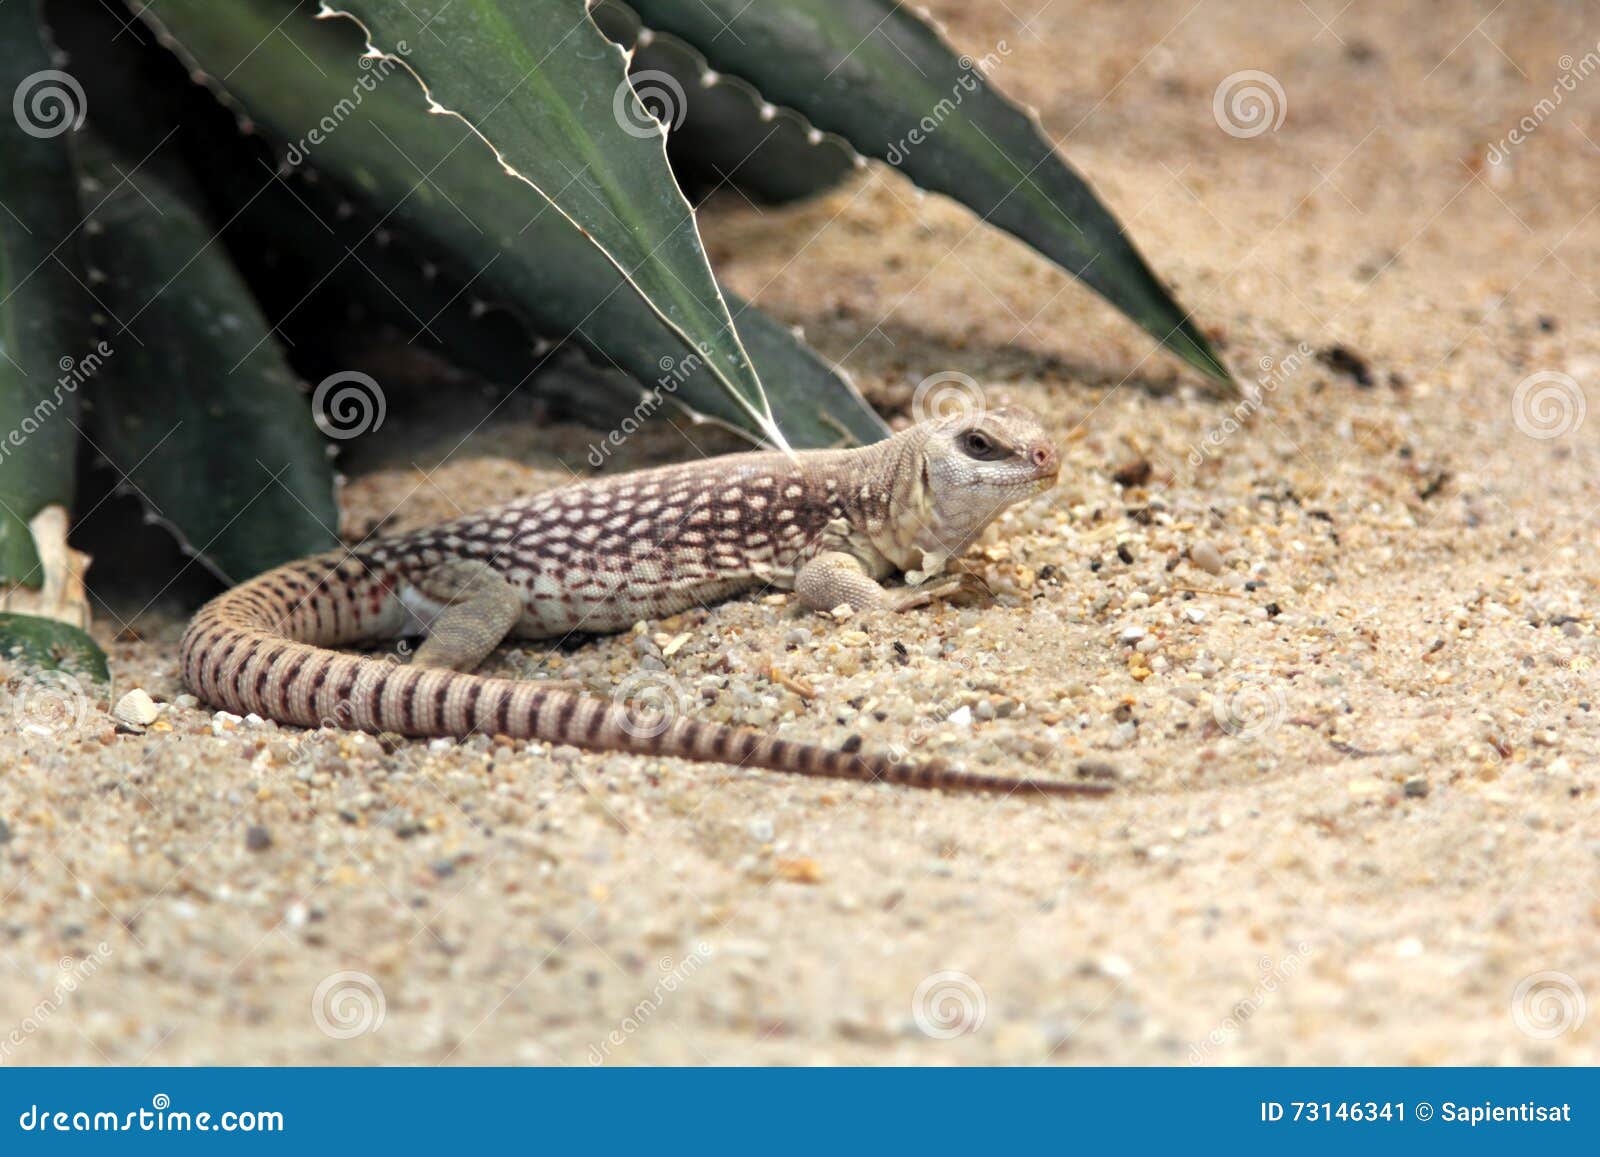 沙漠鬣蜥 蜥蜴 野生动物 - Pixabay上的免费照片 - Pixabay